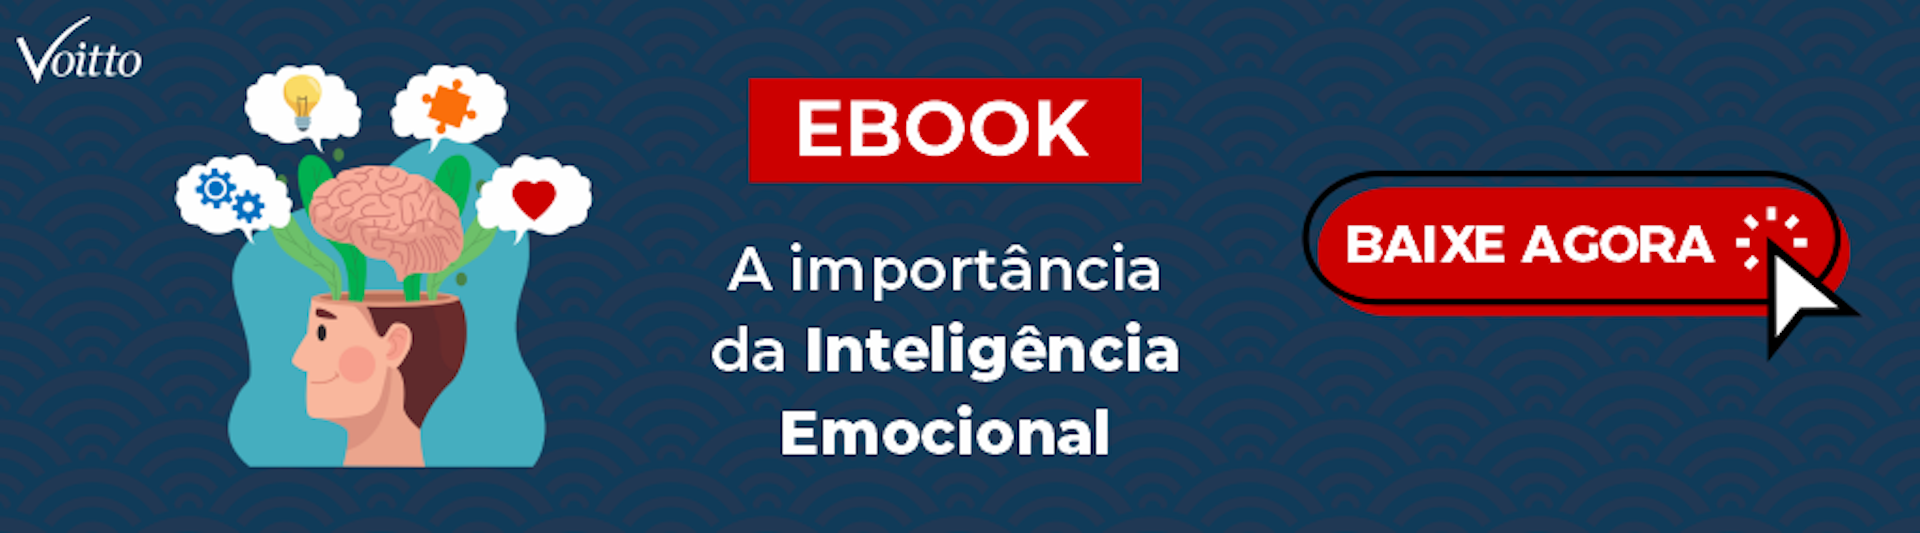 Banner do ebook A Importancia da Inteligencia Emocional.